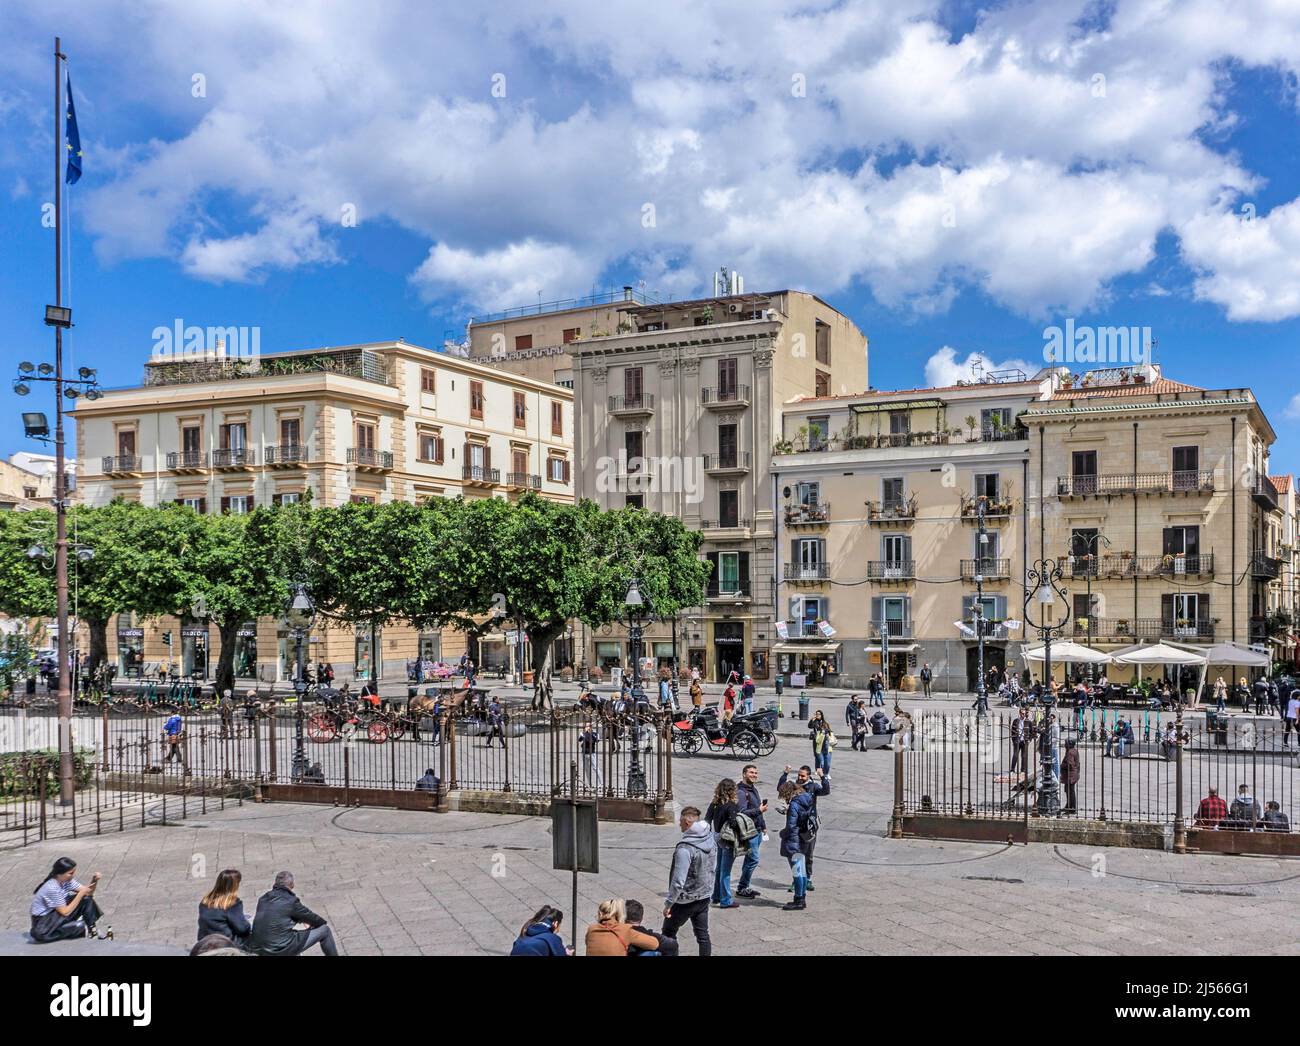 La place devant le Teatro Massimo sur la Piazza Verdi, Palerme, Sicile, Italie. Il y a des touristes. Banque D'Images